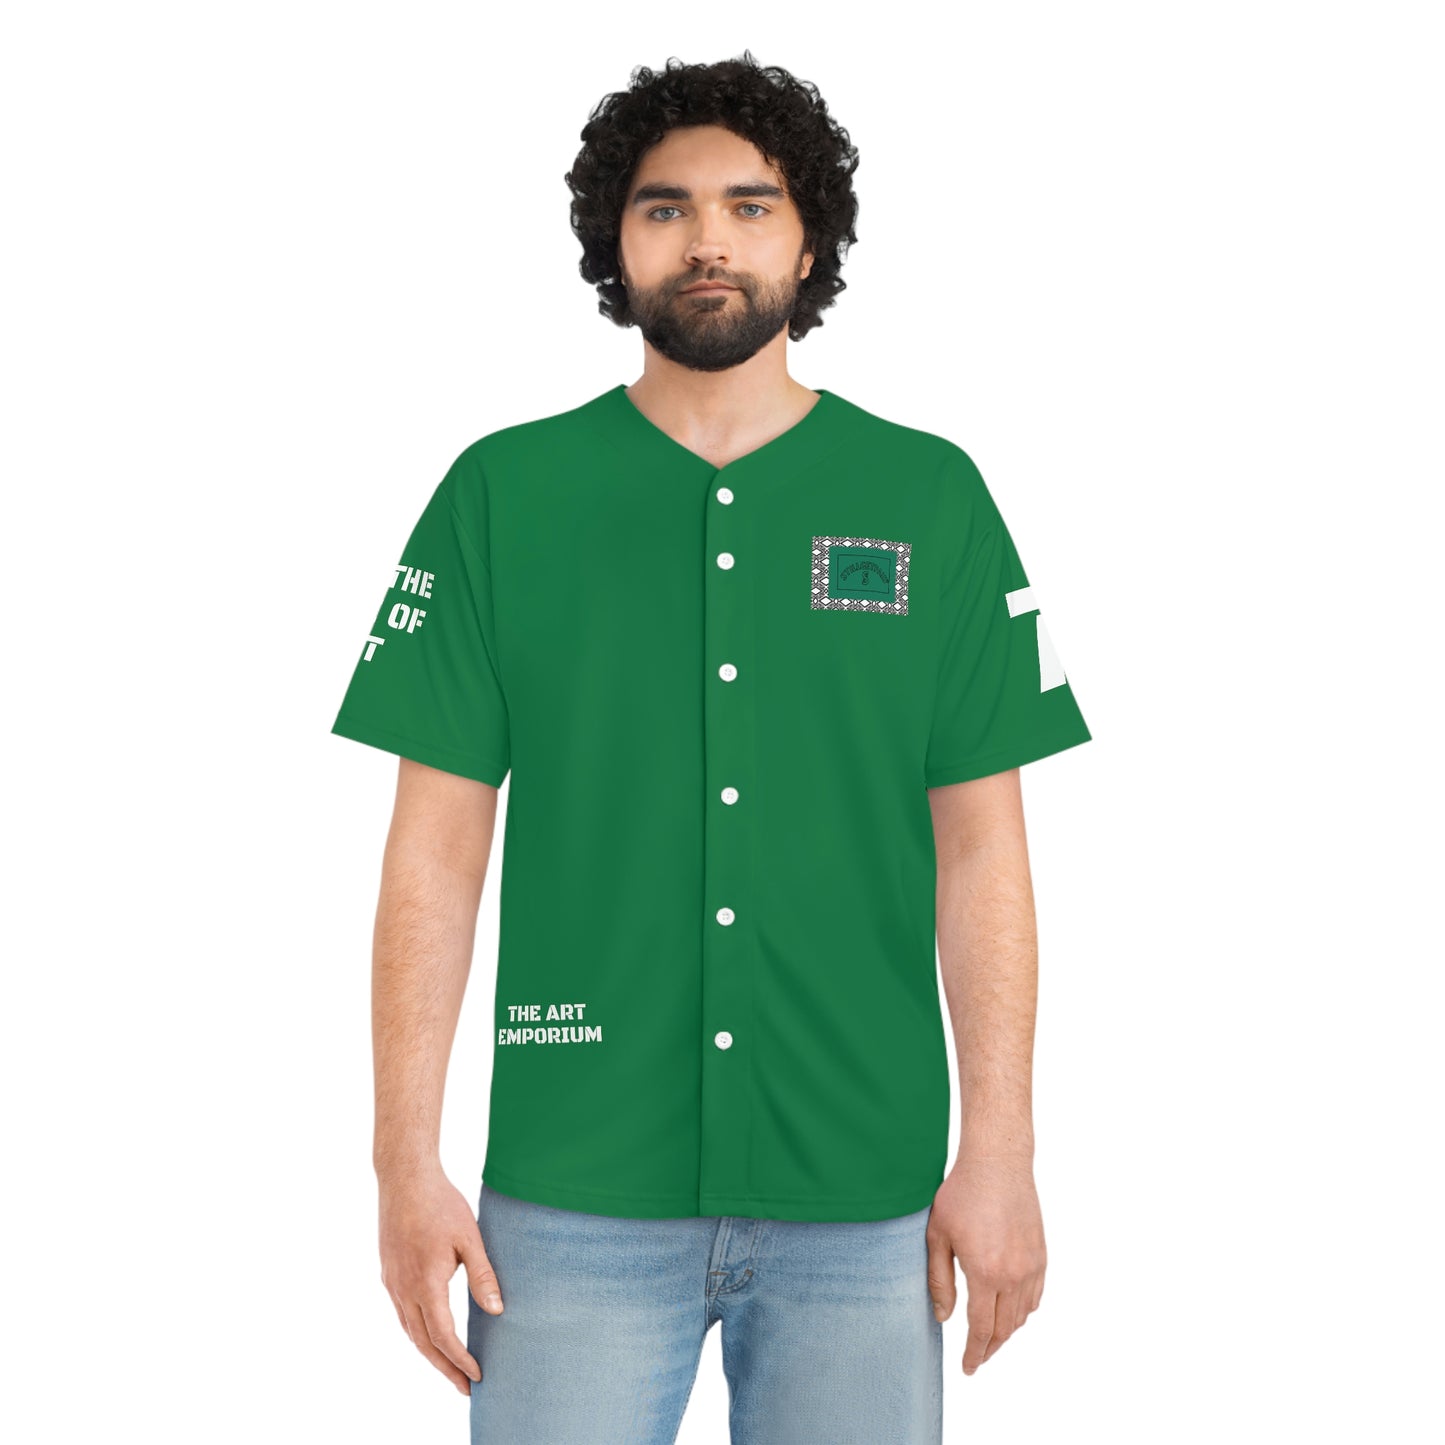 STILLGETPAID® APPAREL green Men's Baseball Jersey